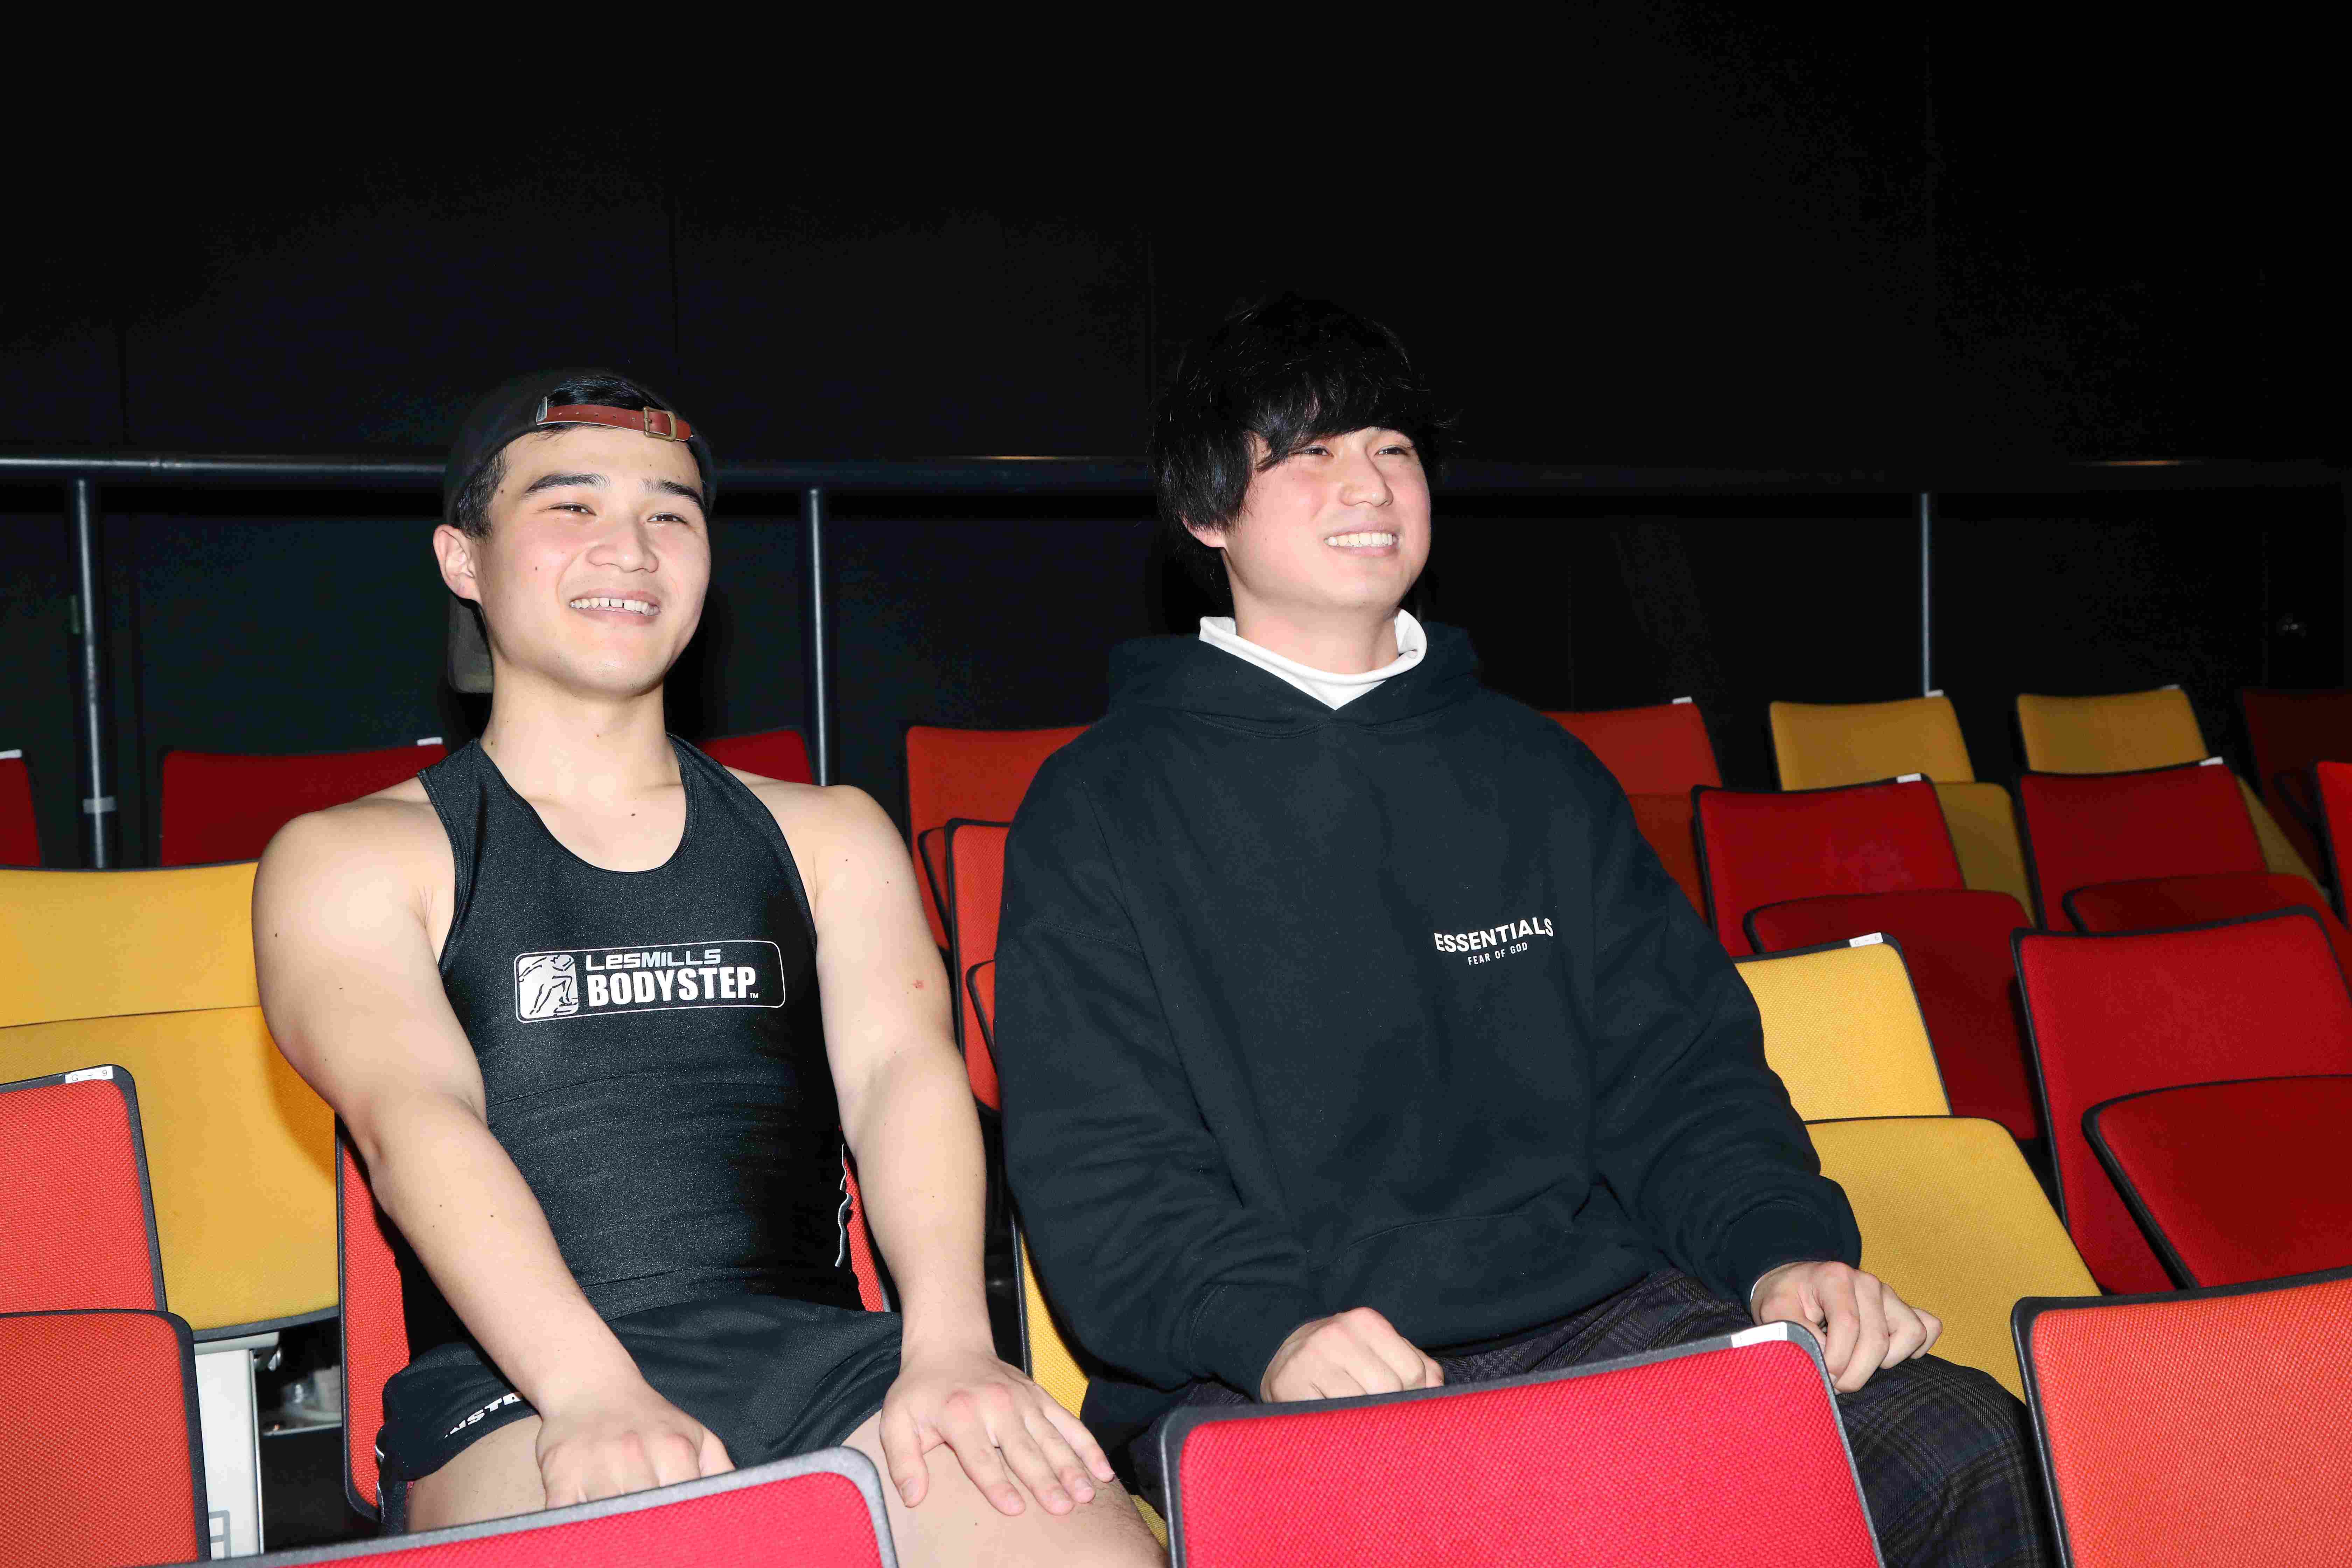 ほっとけない学生芸人GP2019王者「せきんにくん」が、吉本の劇場に潜入してみた #大学生の社会見学